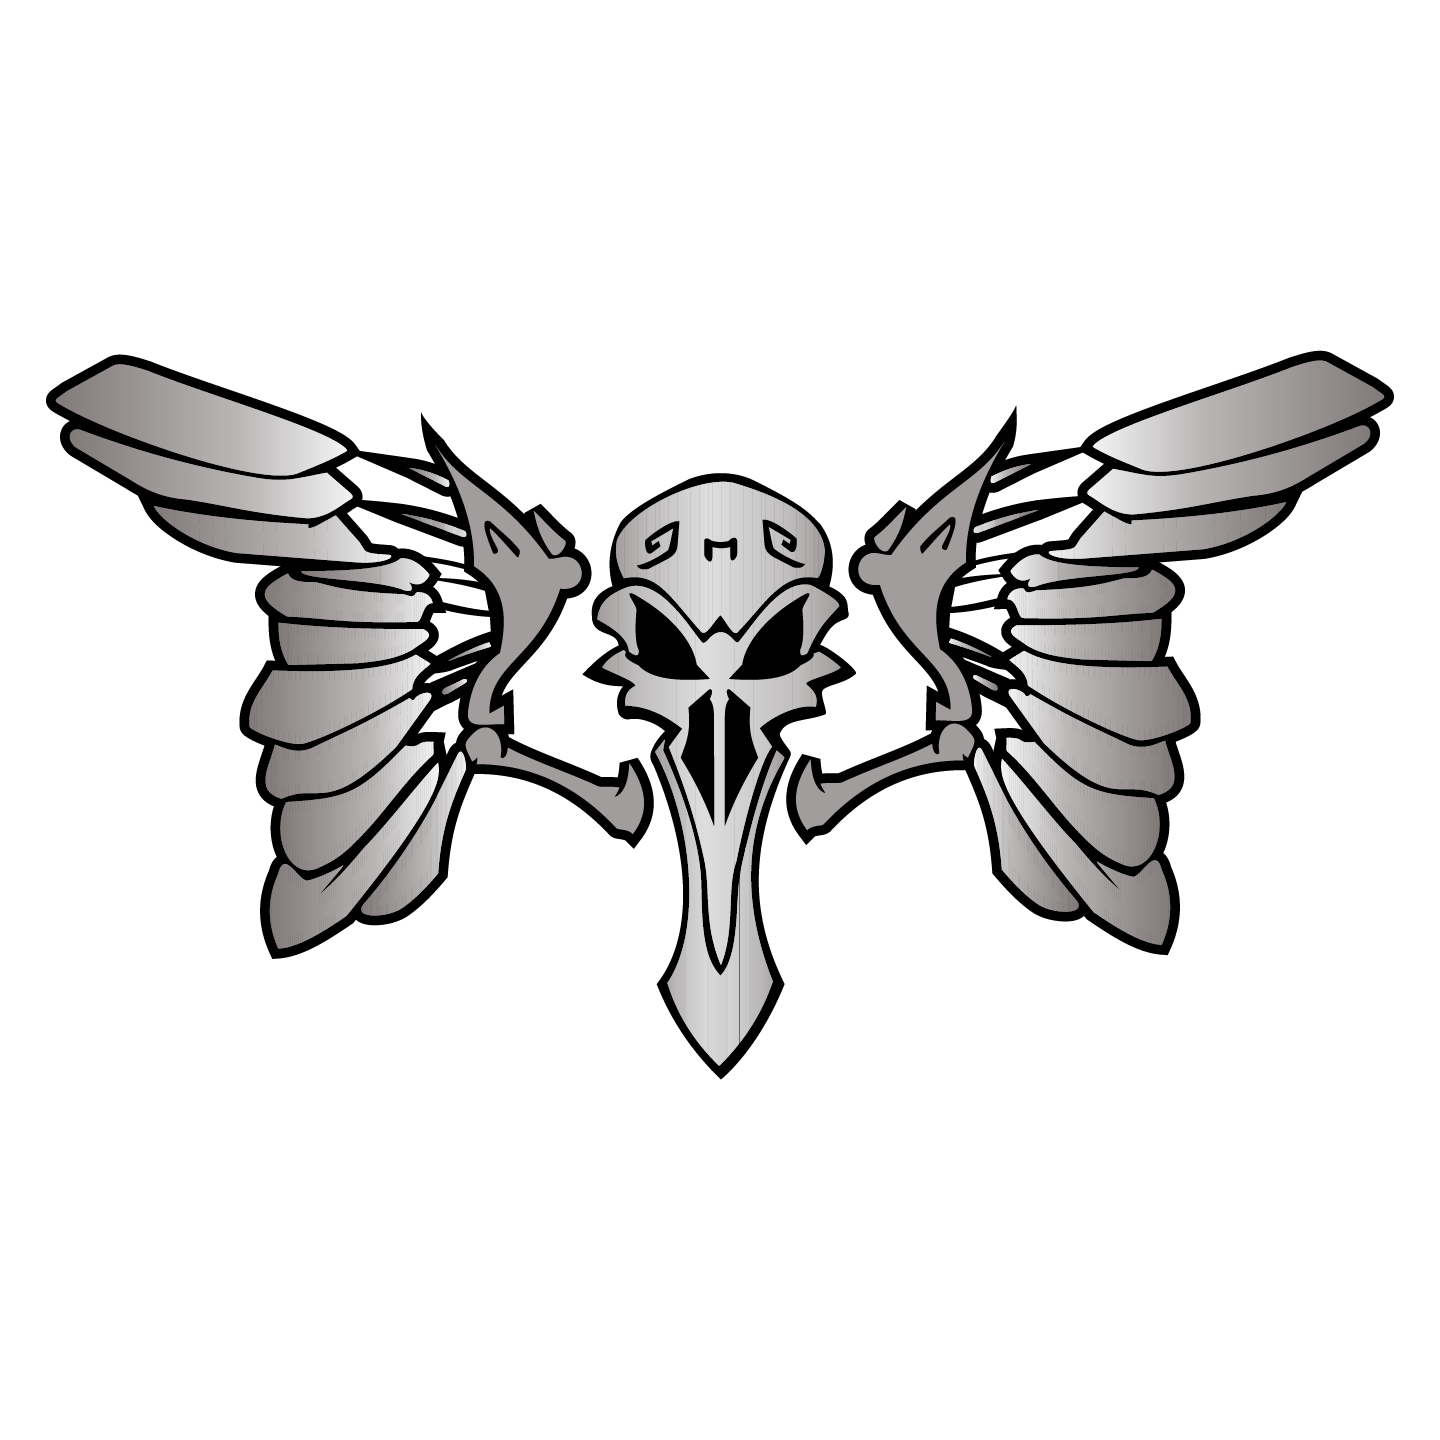  pelicans logo